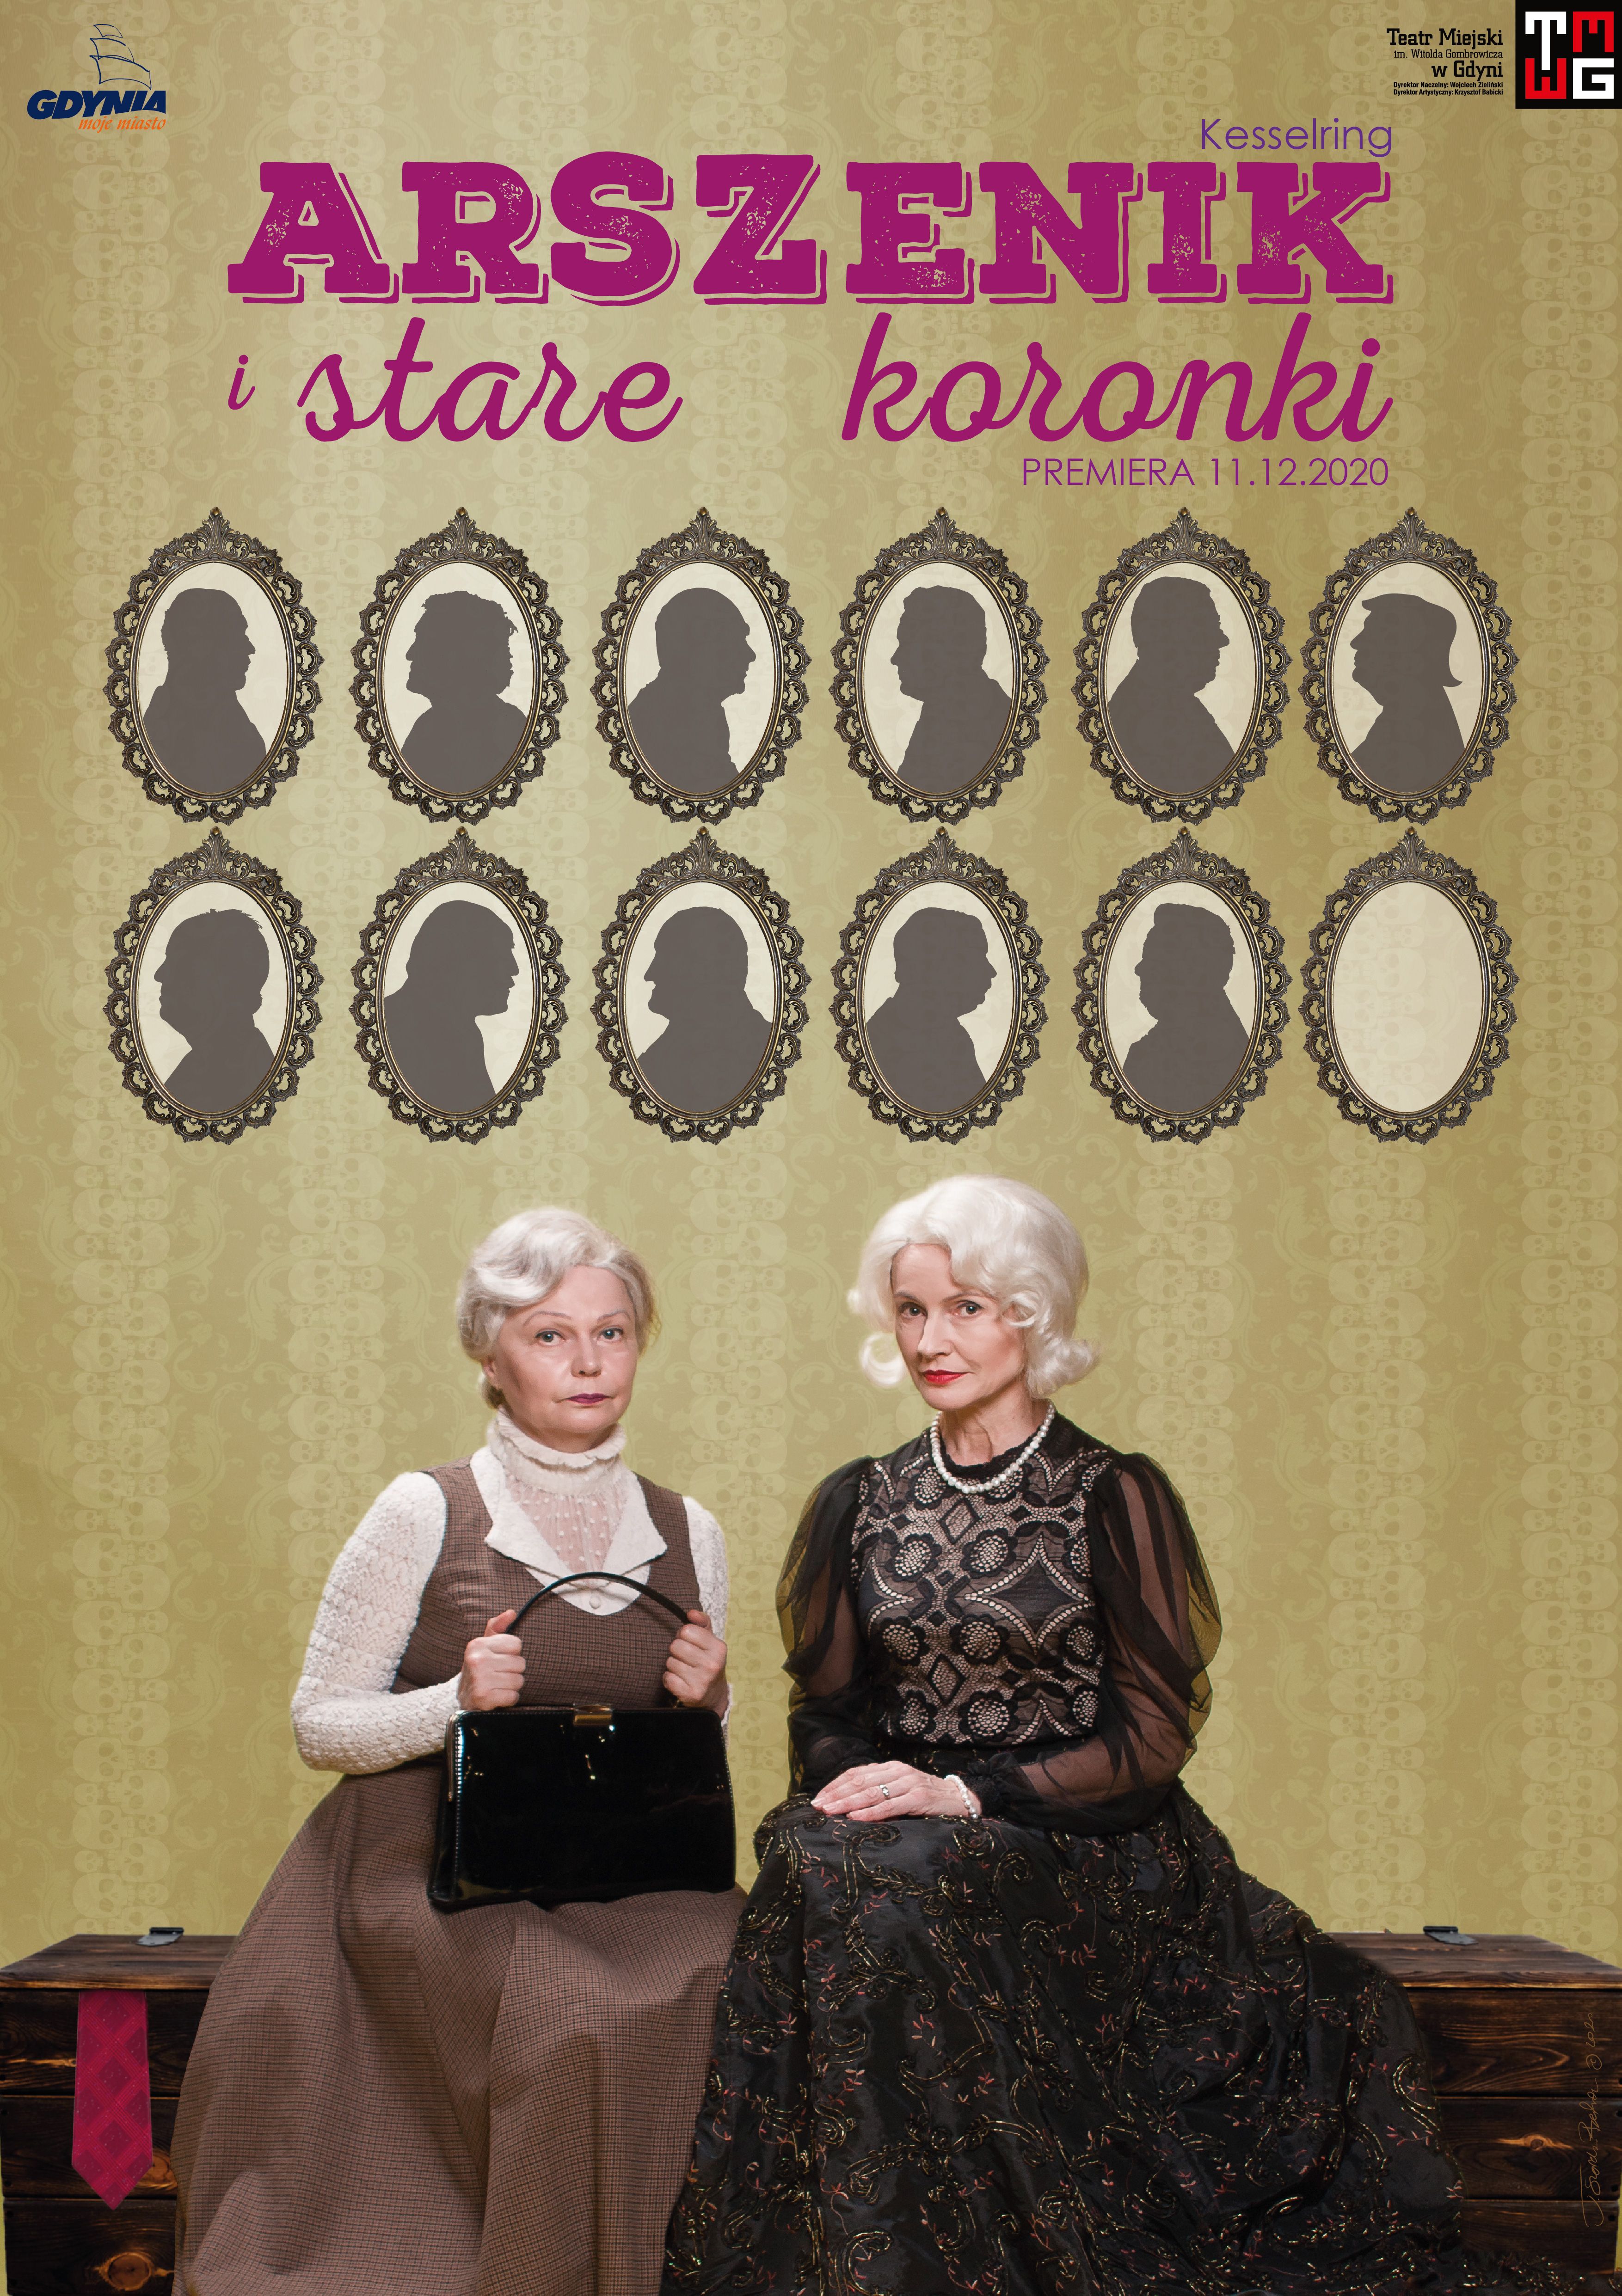 Plakat spektaklu „Arszenik i stare koronki": dwie starsze panie - siostry -  siedzą na dużym kufrze. Mat. TM